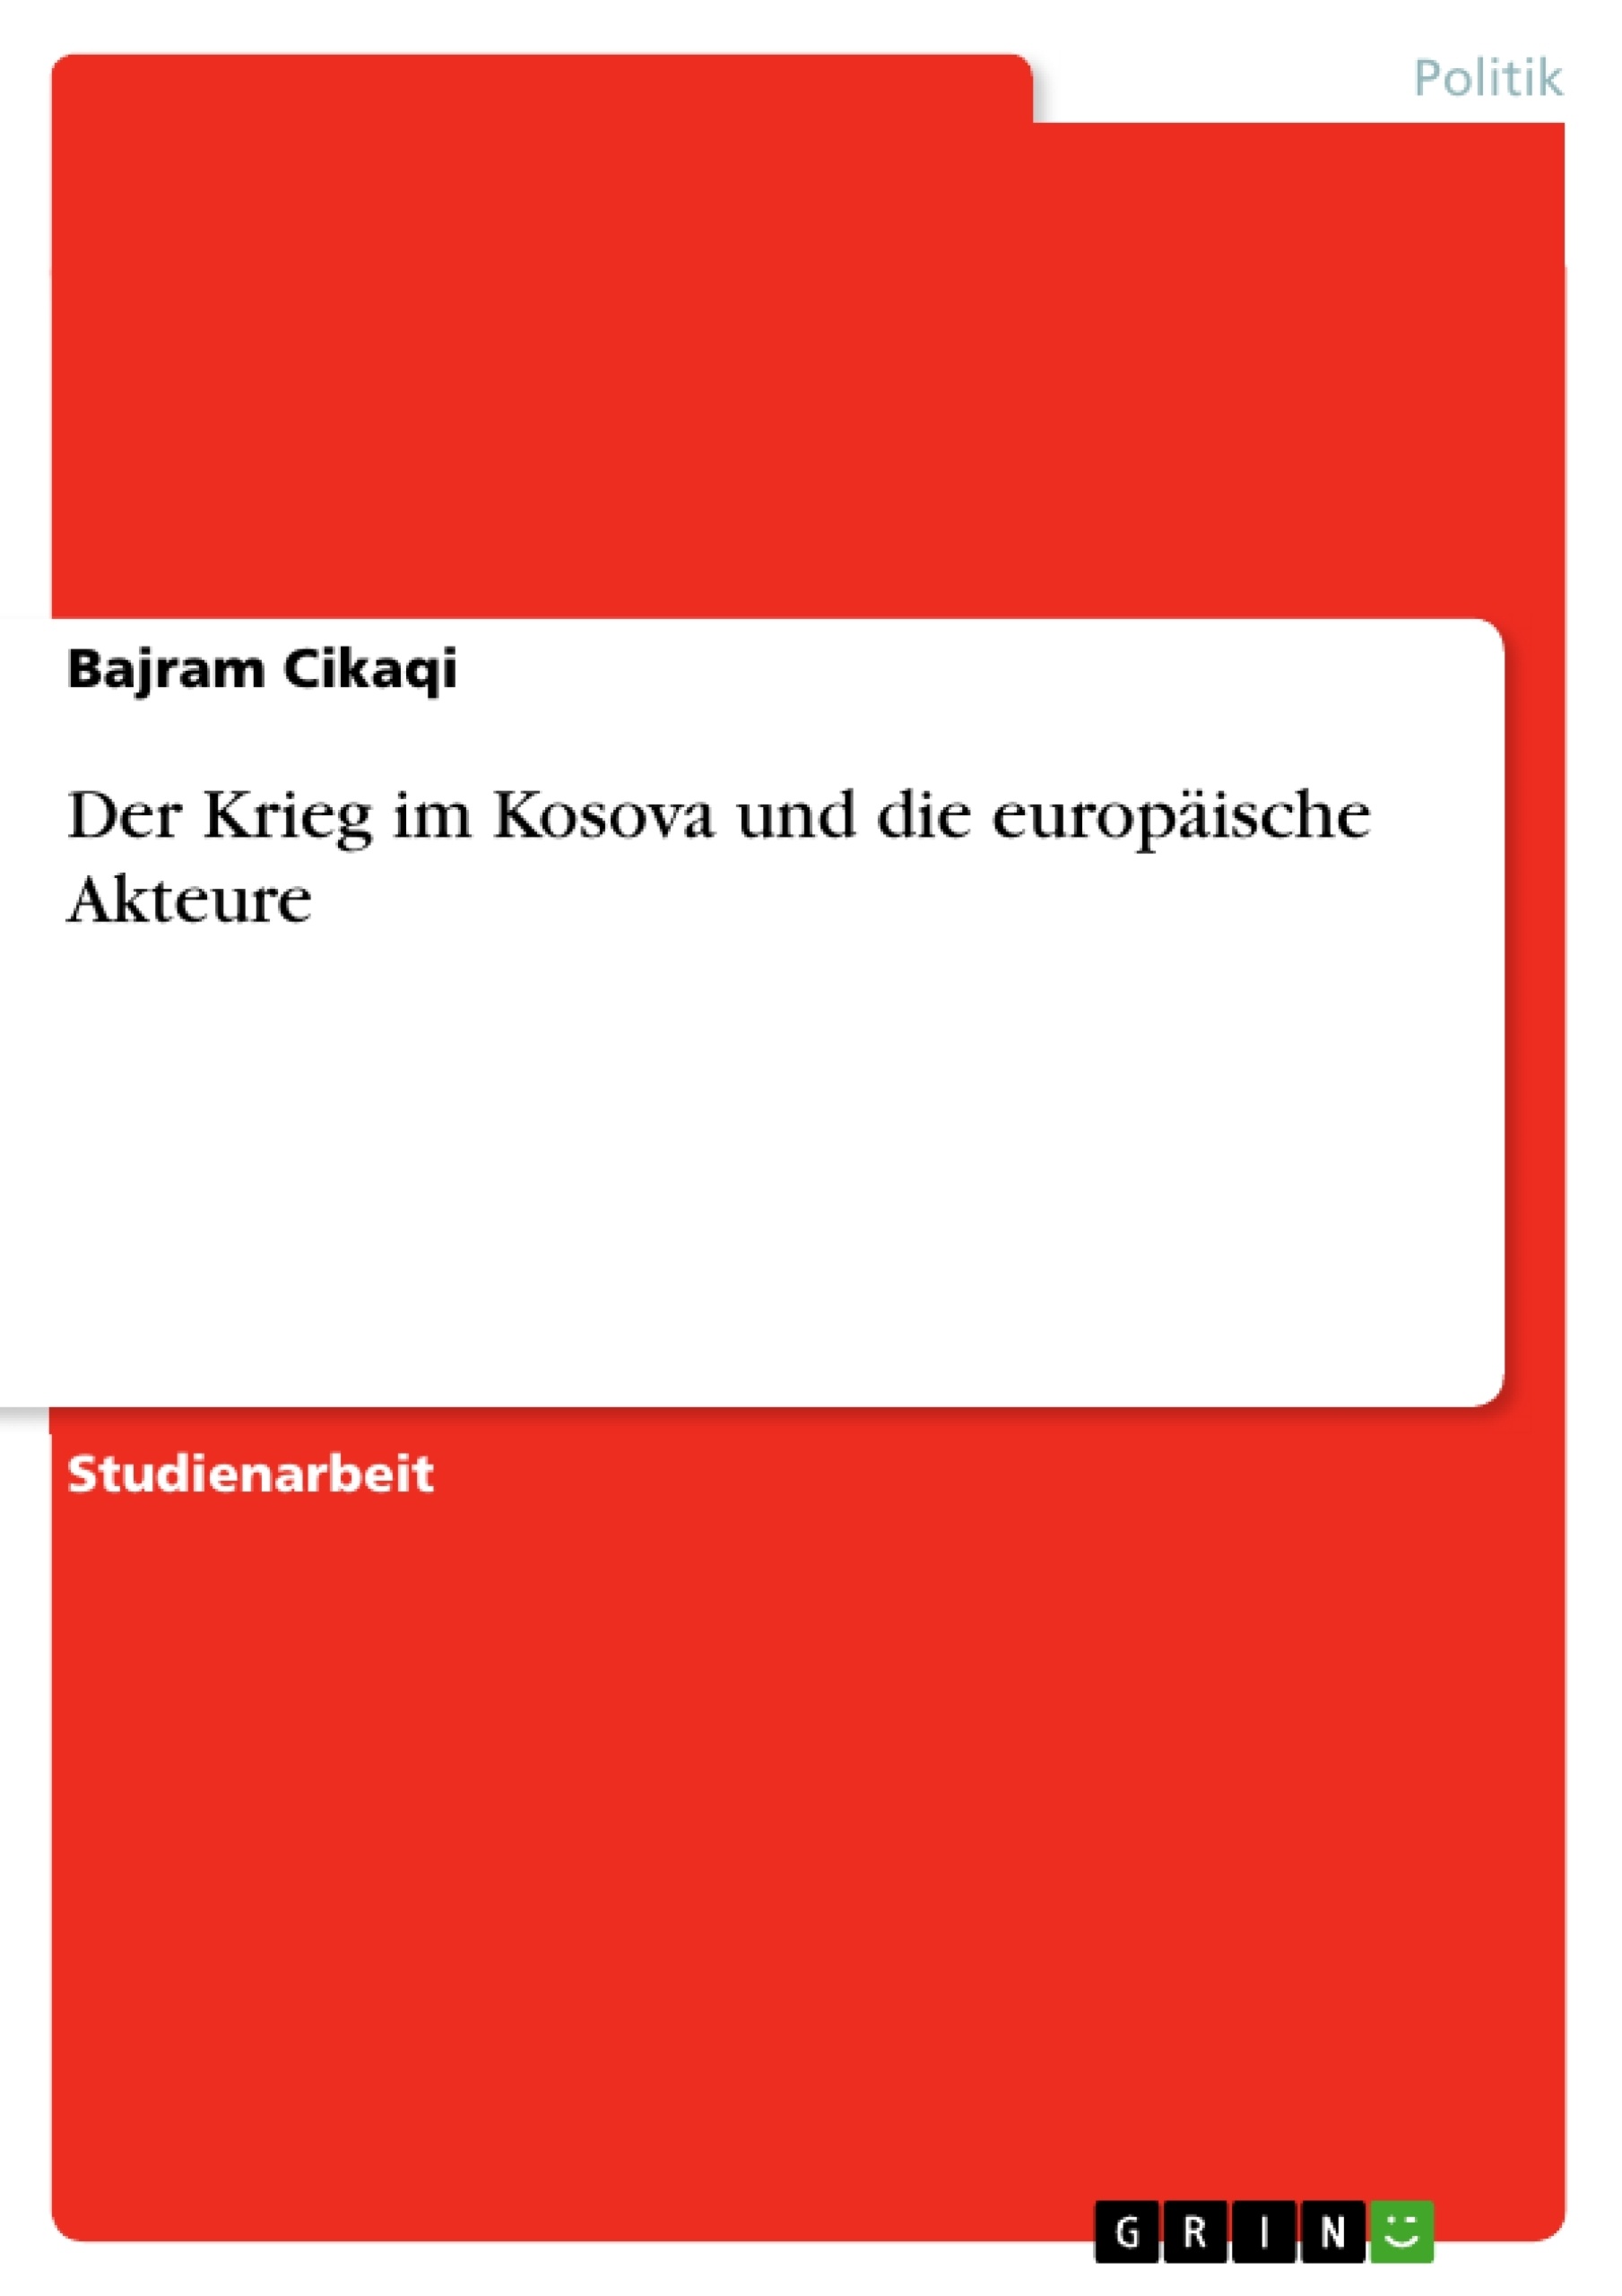 Título: Der Krieg im Kosova und die europäische Akteure